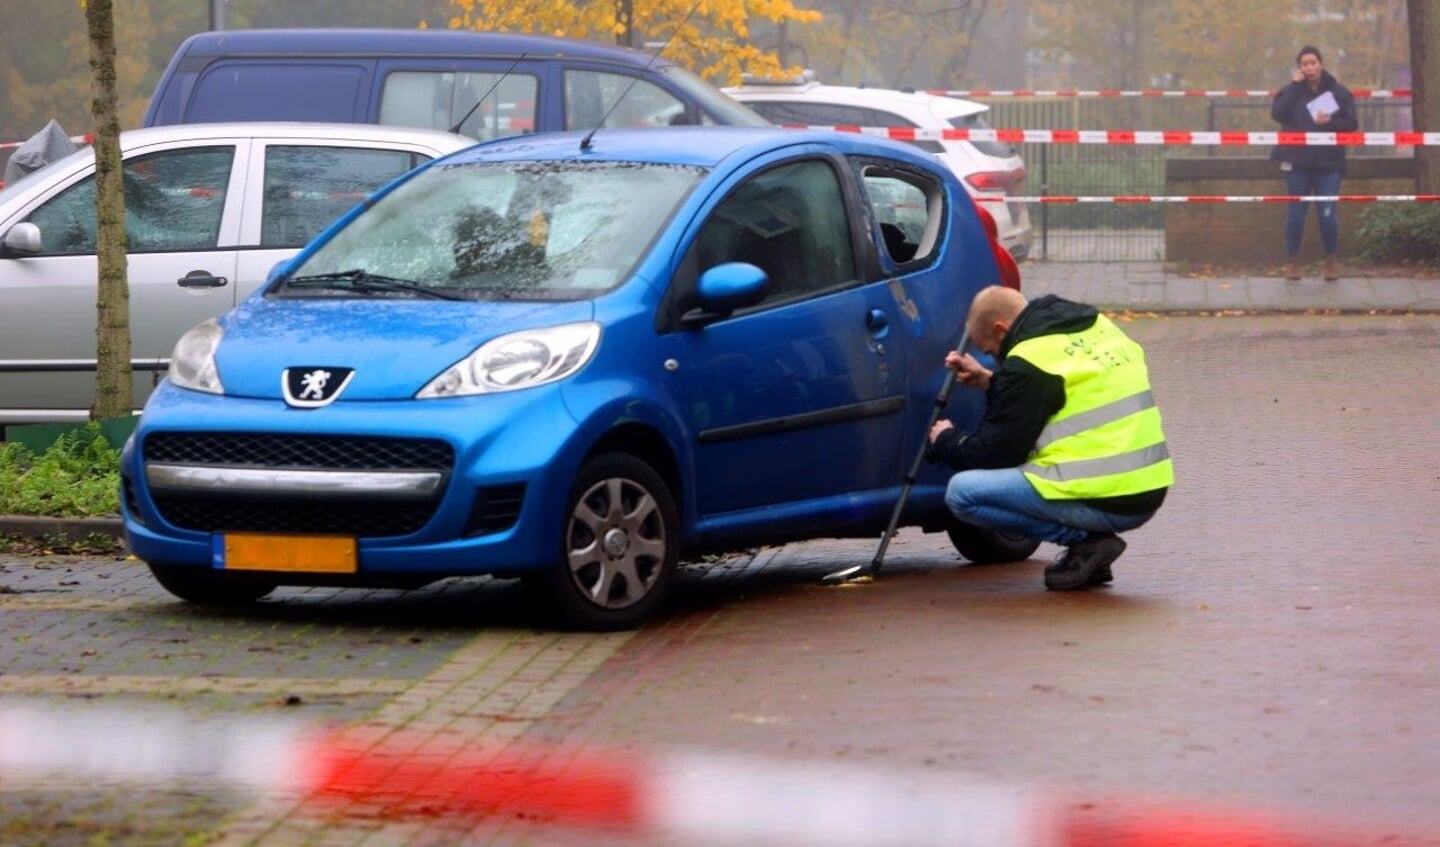 De politie is een groot buurtonderzoek gestart na de explosie vanochtend rond 08.00 uur aan de Acaciasingel in Den Bosch waarbij meerdere voertuigen en ook een woning schade hebben opgelopen.